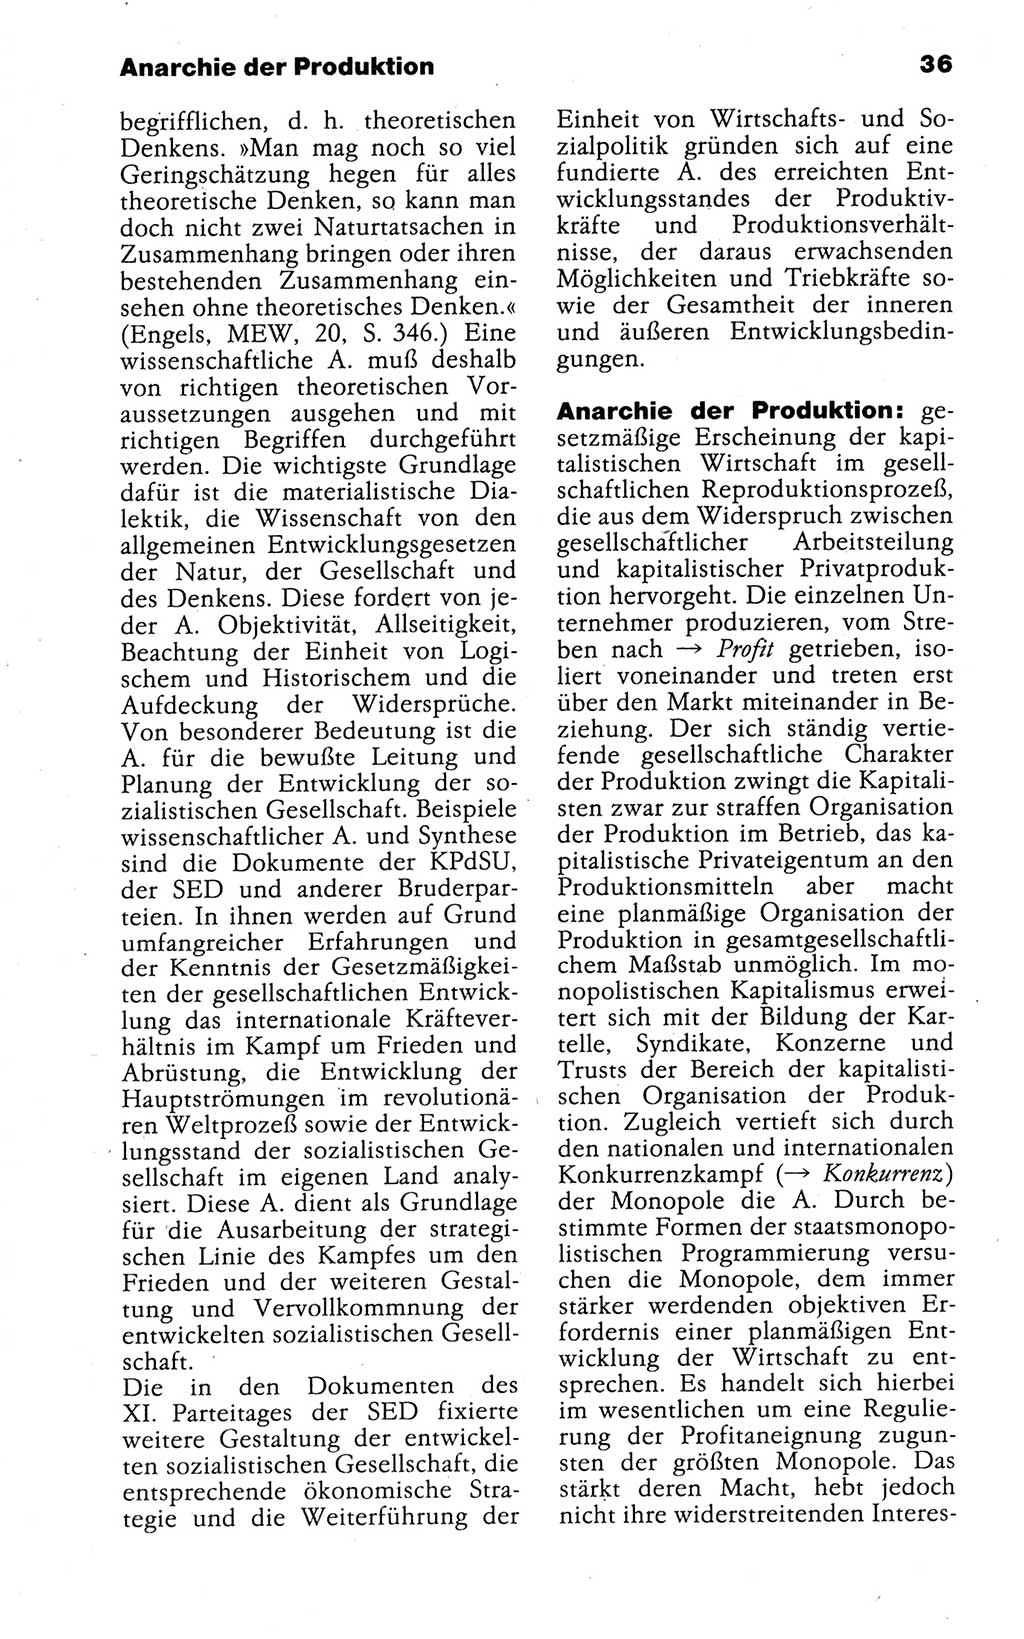 Kleines politisches Wörterbuch [Deutsche Demokratische Republik (DDR)] 1988, Seite 36 (Kl. pol. Wb. DDR 1988, S. 36)